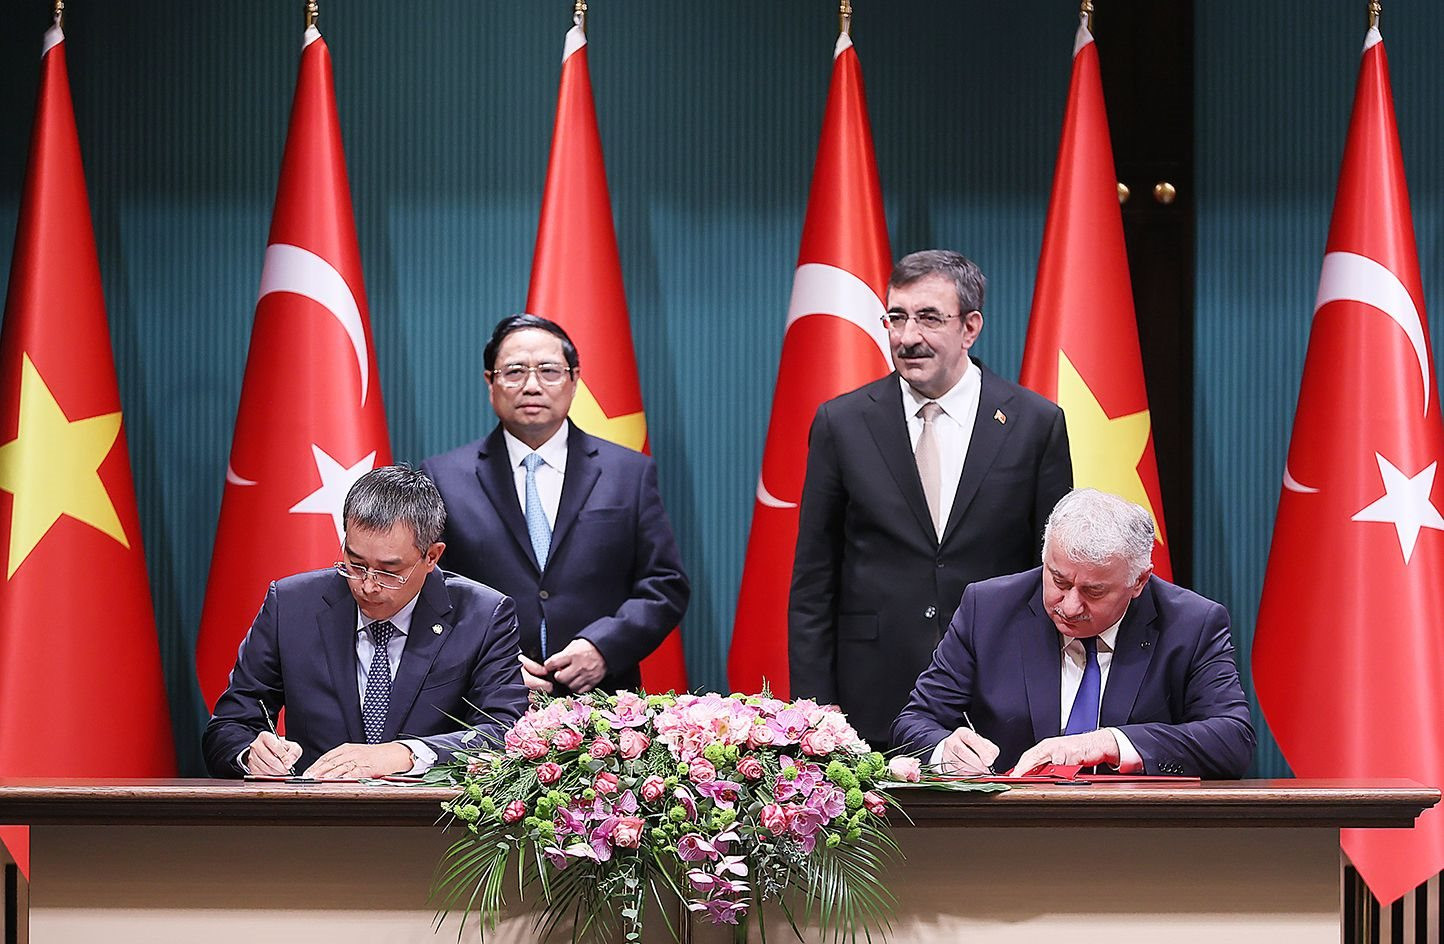 Thủ tướng Phạm Minh Chính chứng kiến lễ ký kết hợp tác mở rộng vận chuyển hàng không giữa Vietnam Airlines và Turkish Airlines